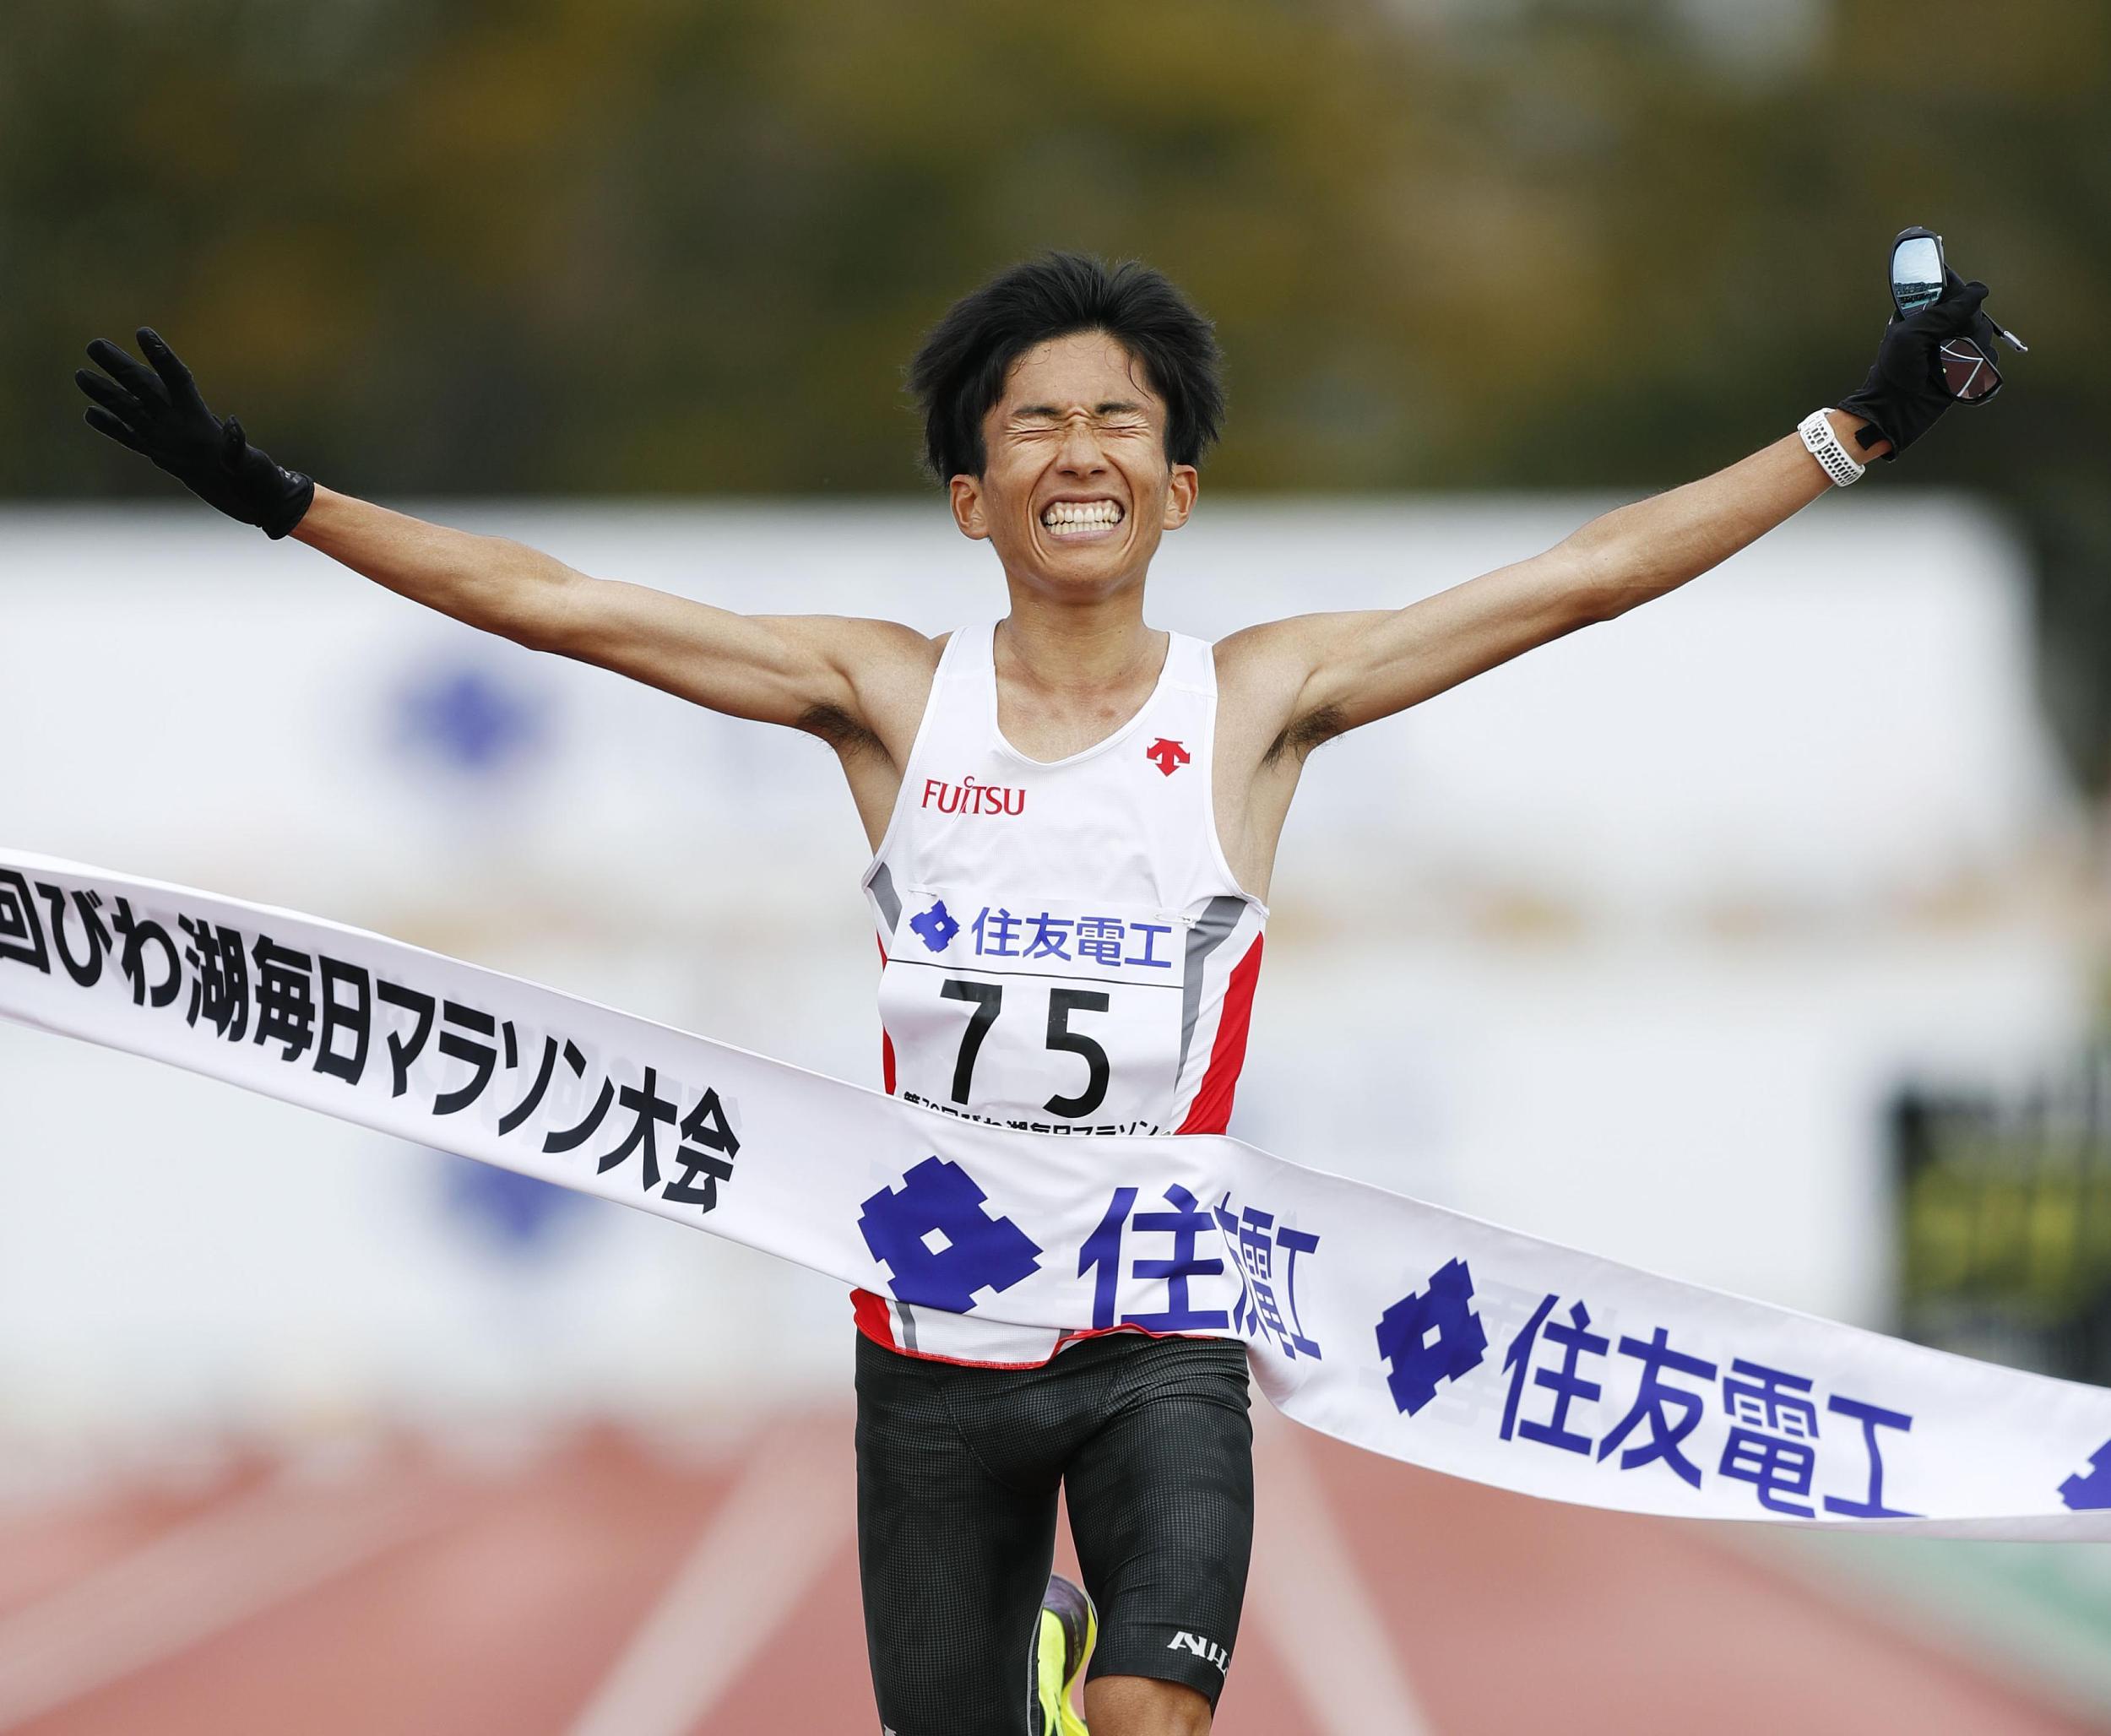 铃木健吾成为第一个跑进2小时05分的黄种人